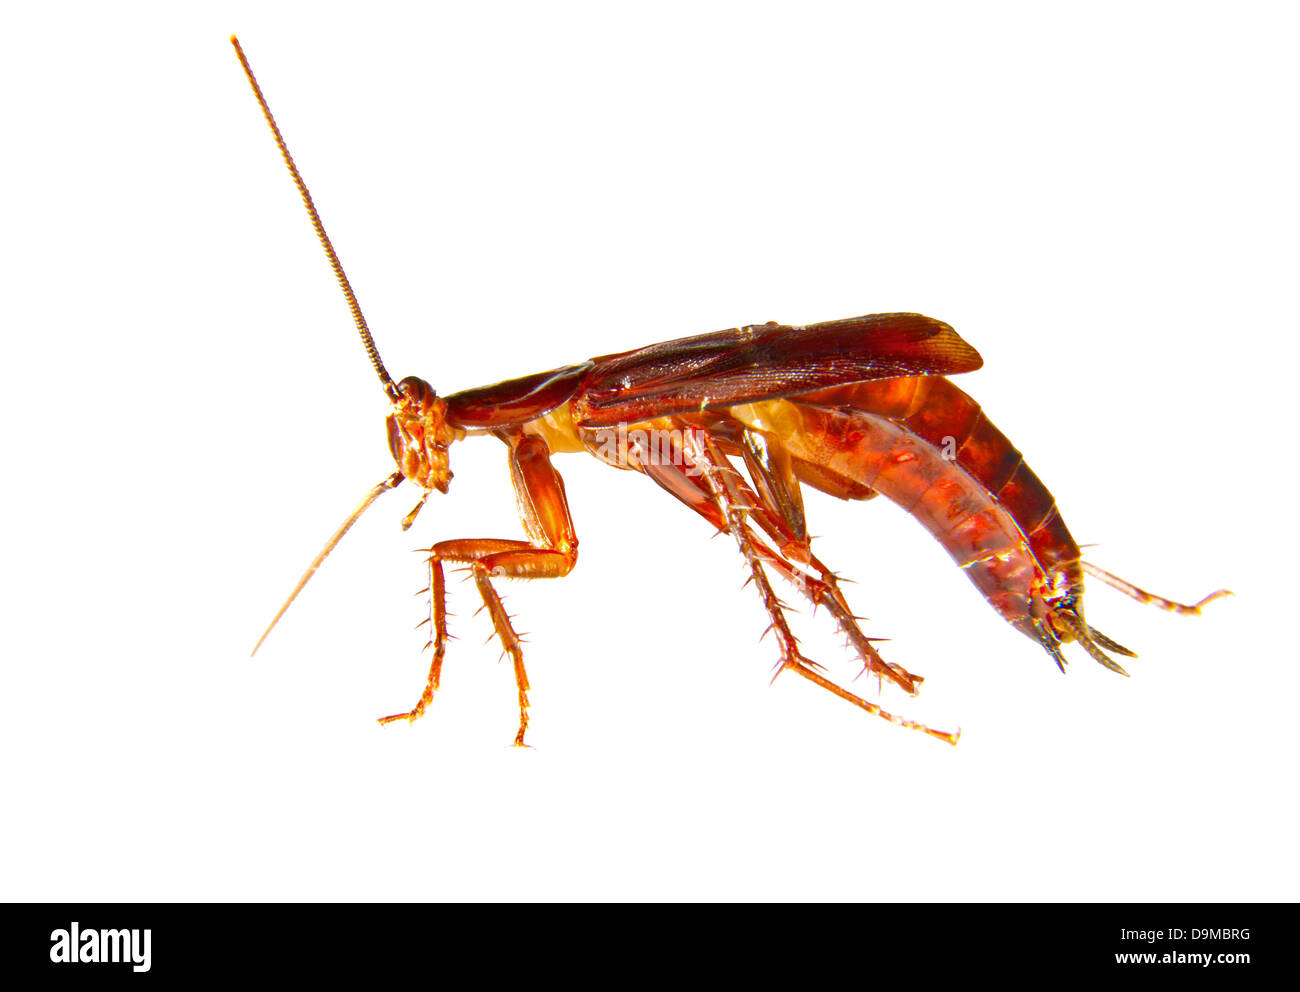 Immagine di uno scarafaggio strisciando peste di insetto Foto Stock